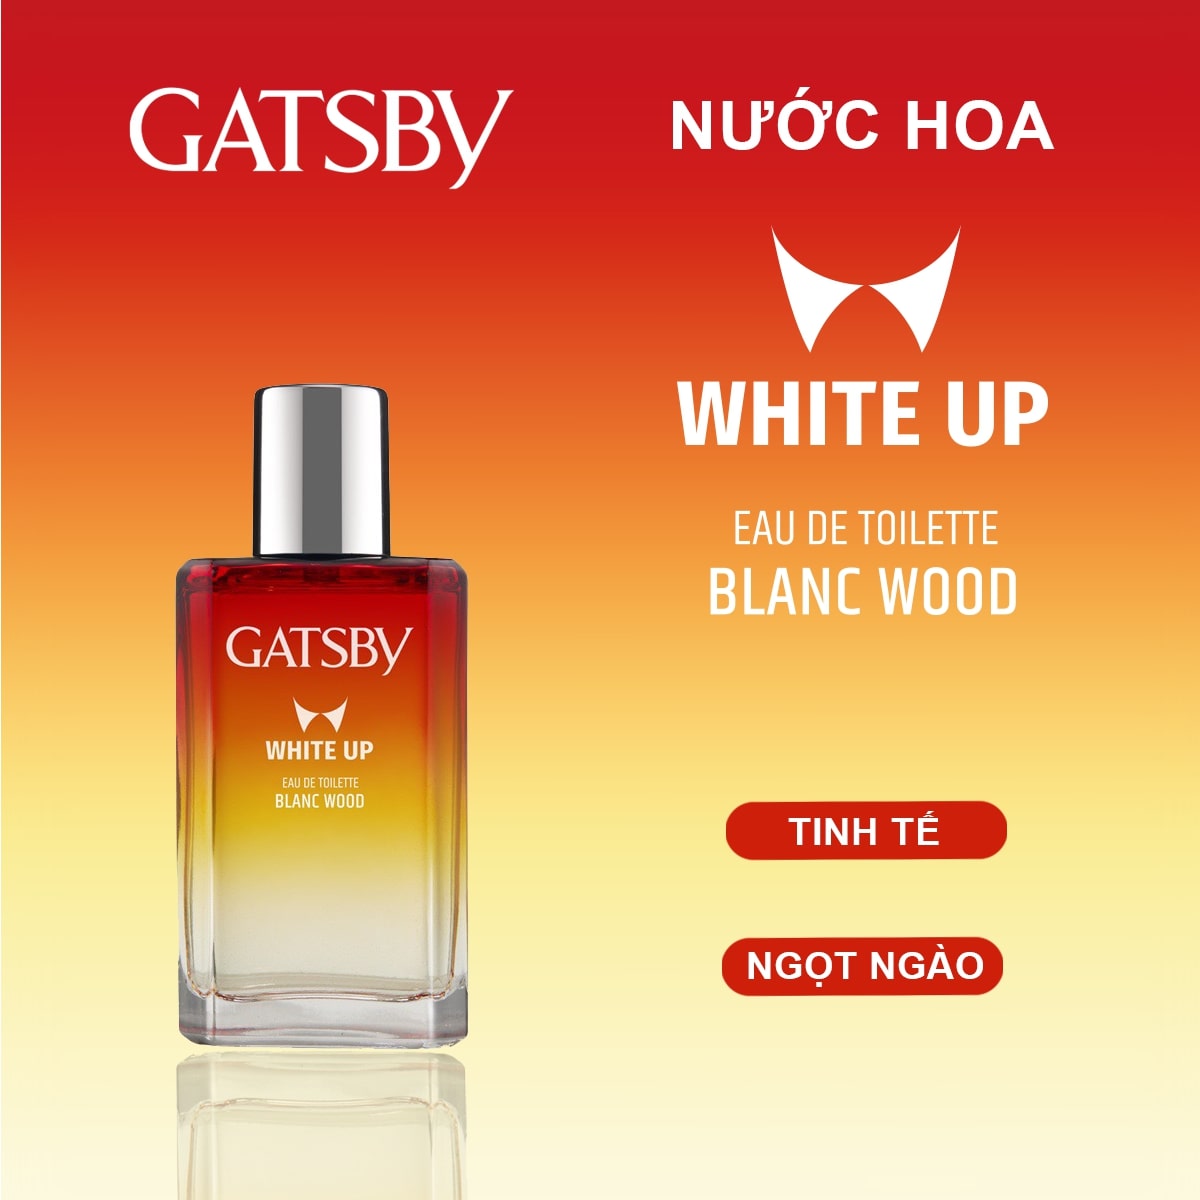 Gatsby White Up Eau De Toilette Blanc Wood